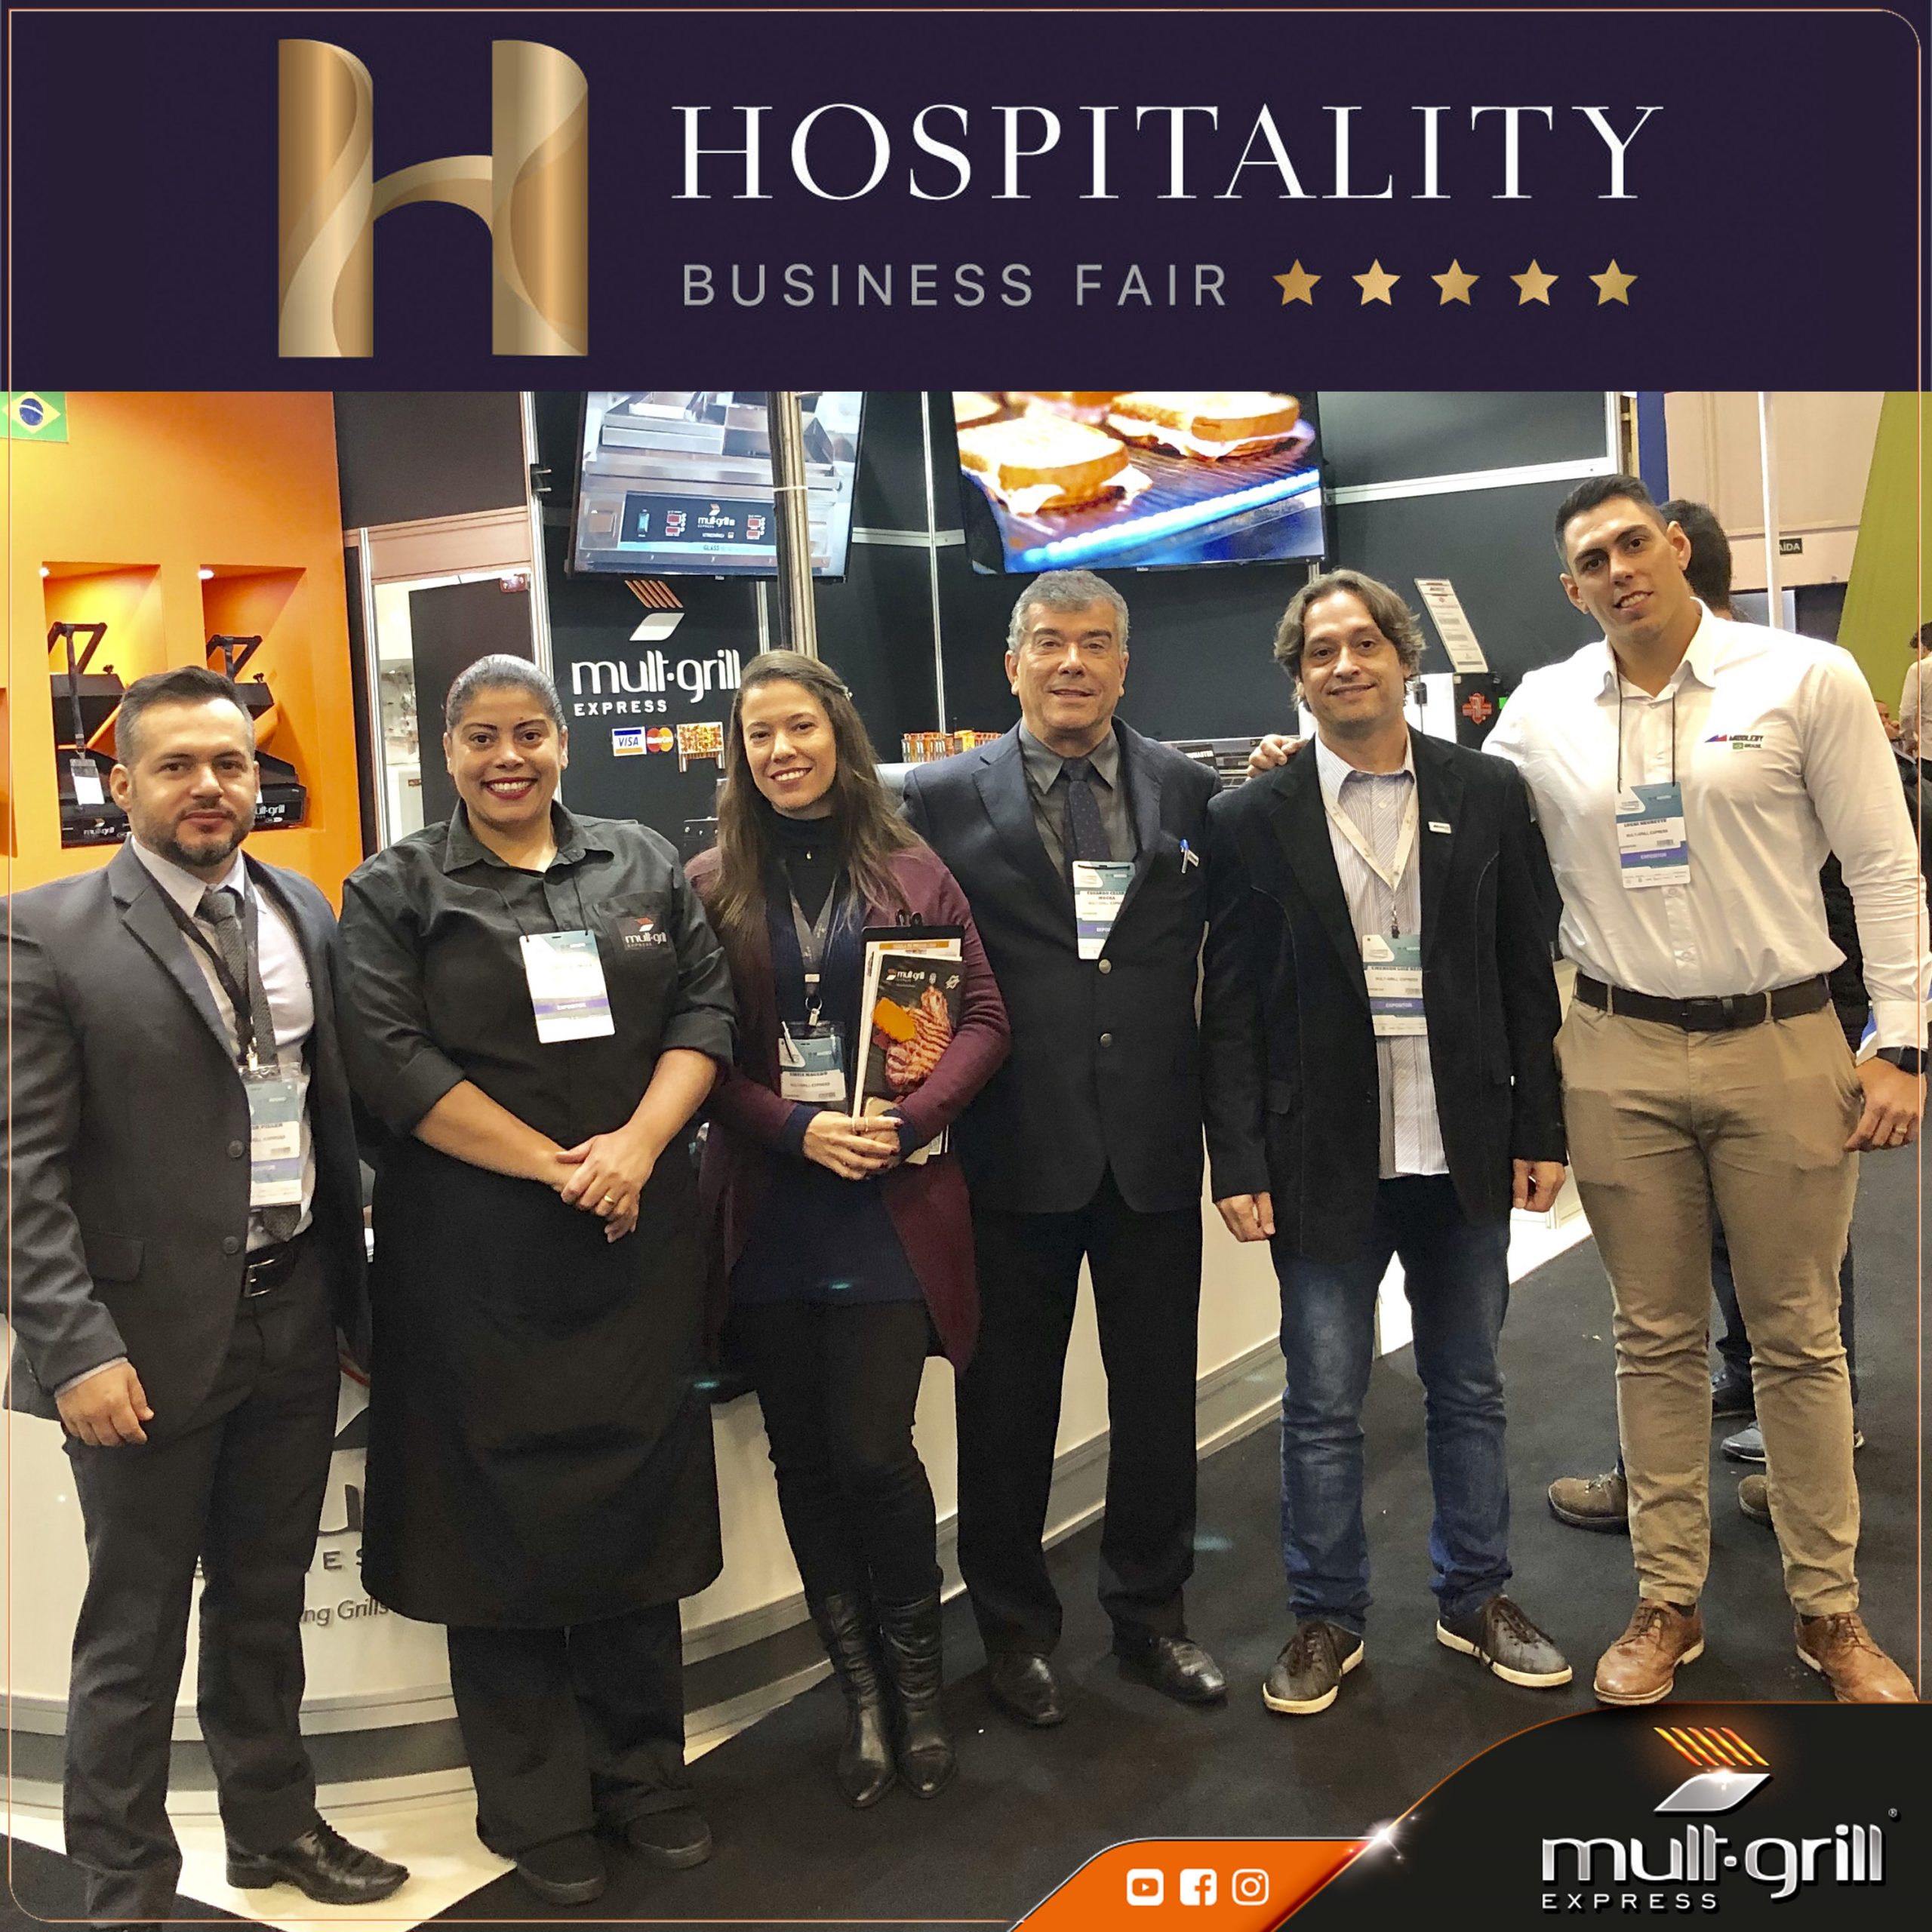 visite-feira-hospitality-business-fair-2019-mult-grill